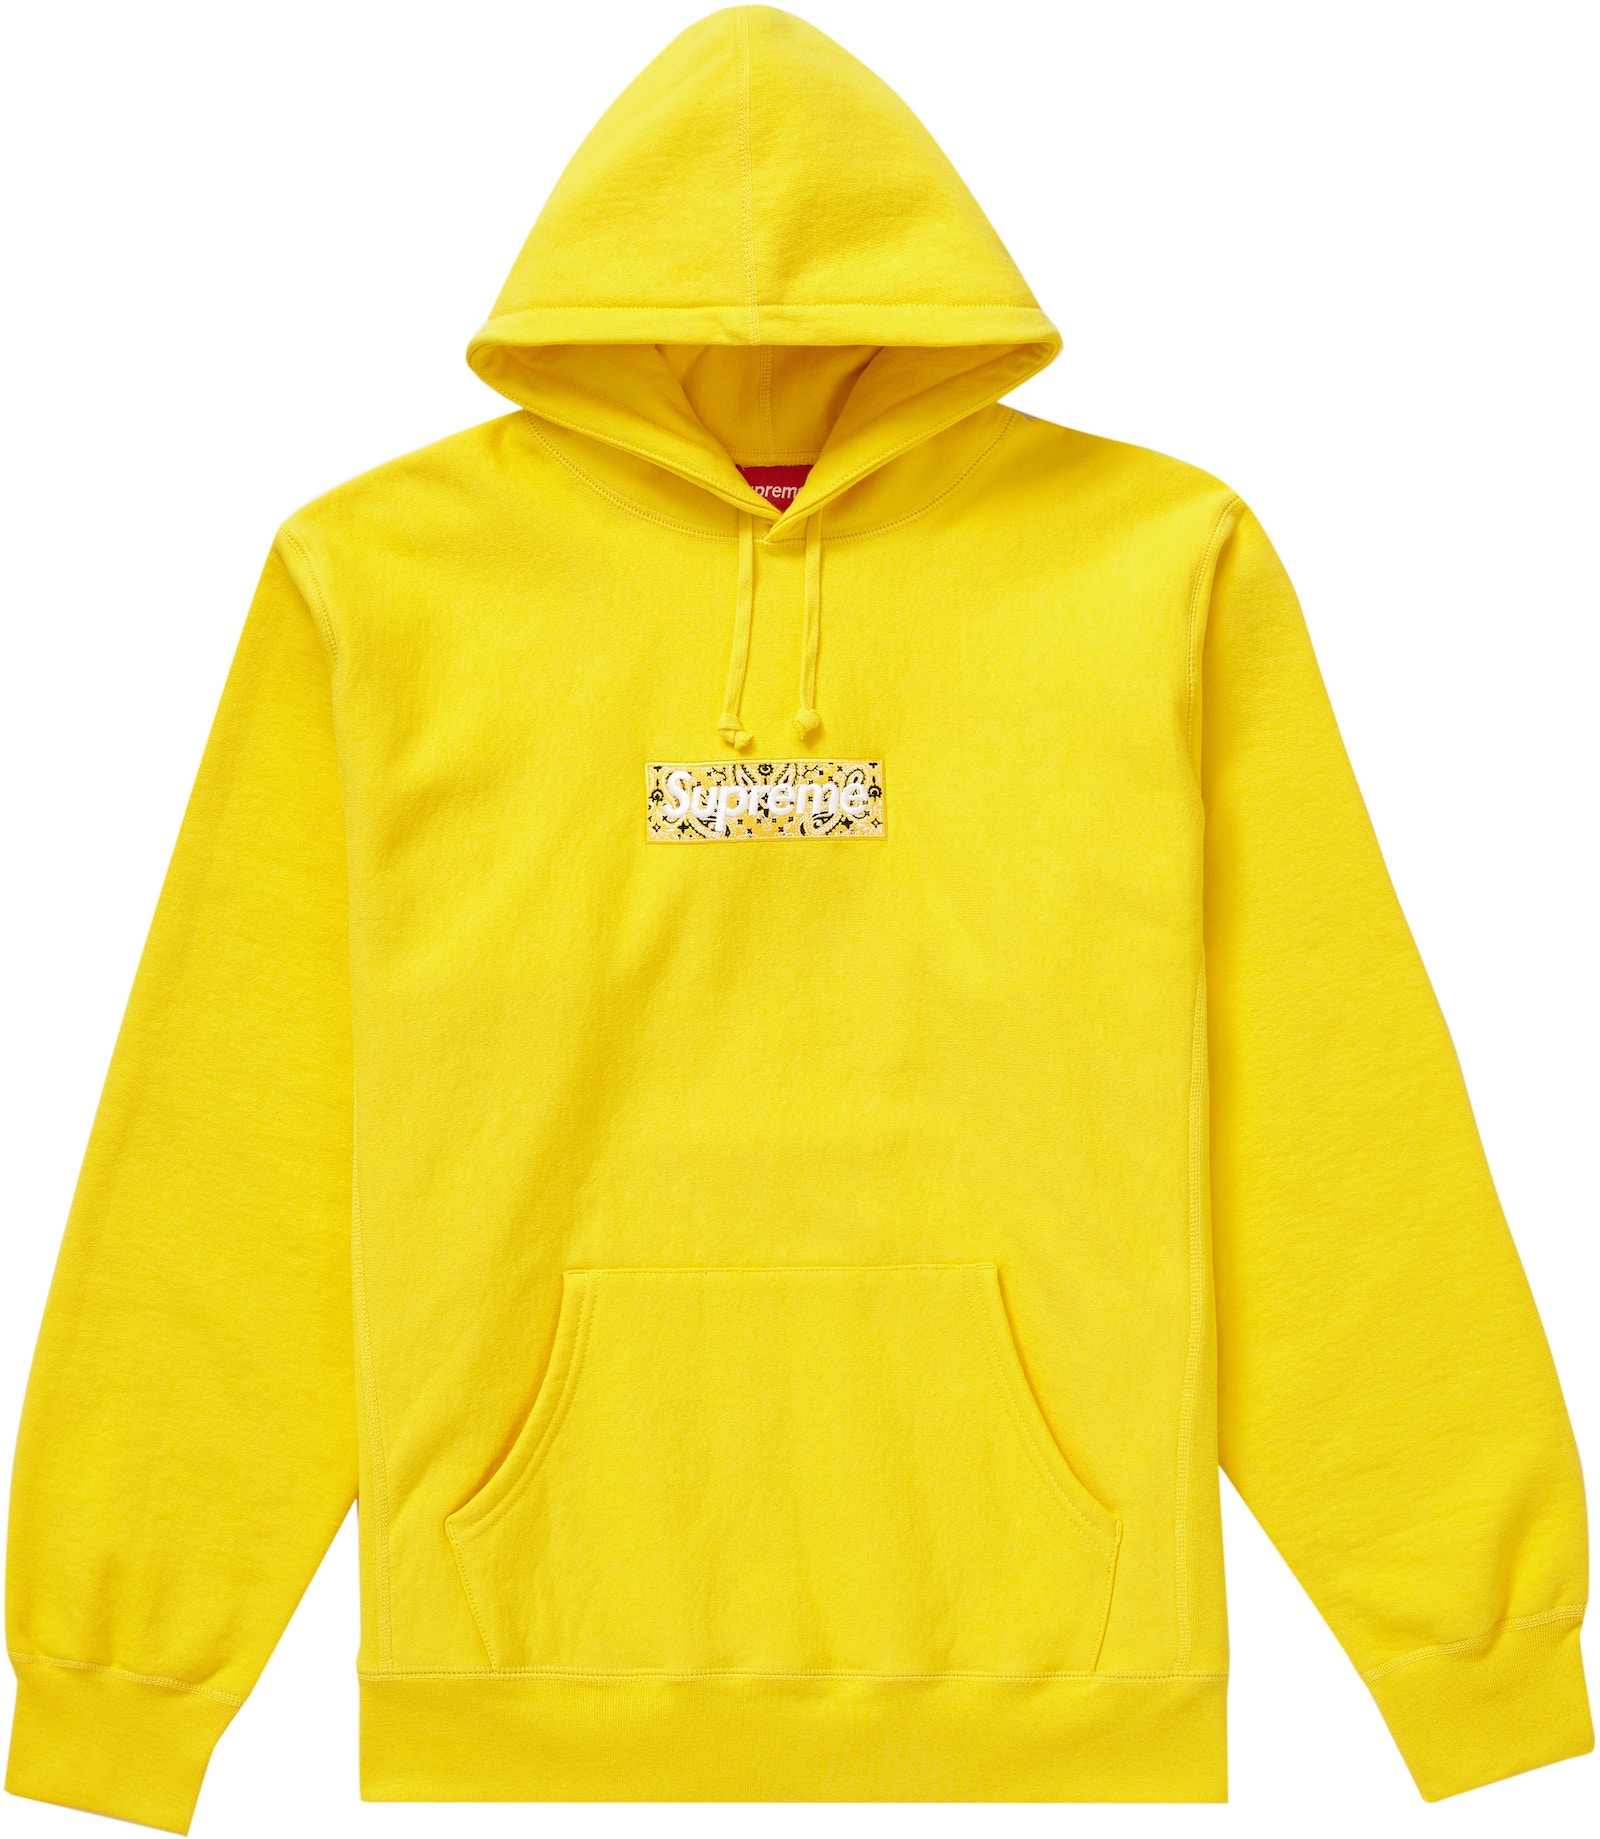 Supreme Bandana Box Logo Hooded Sweatshirt Yellow - FW19